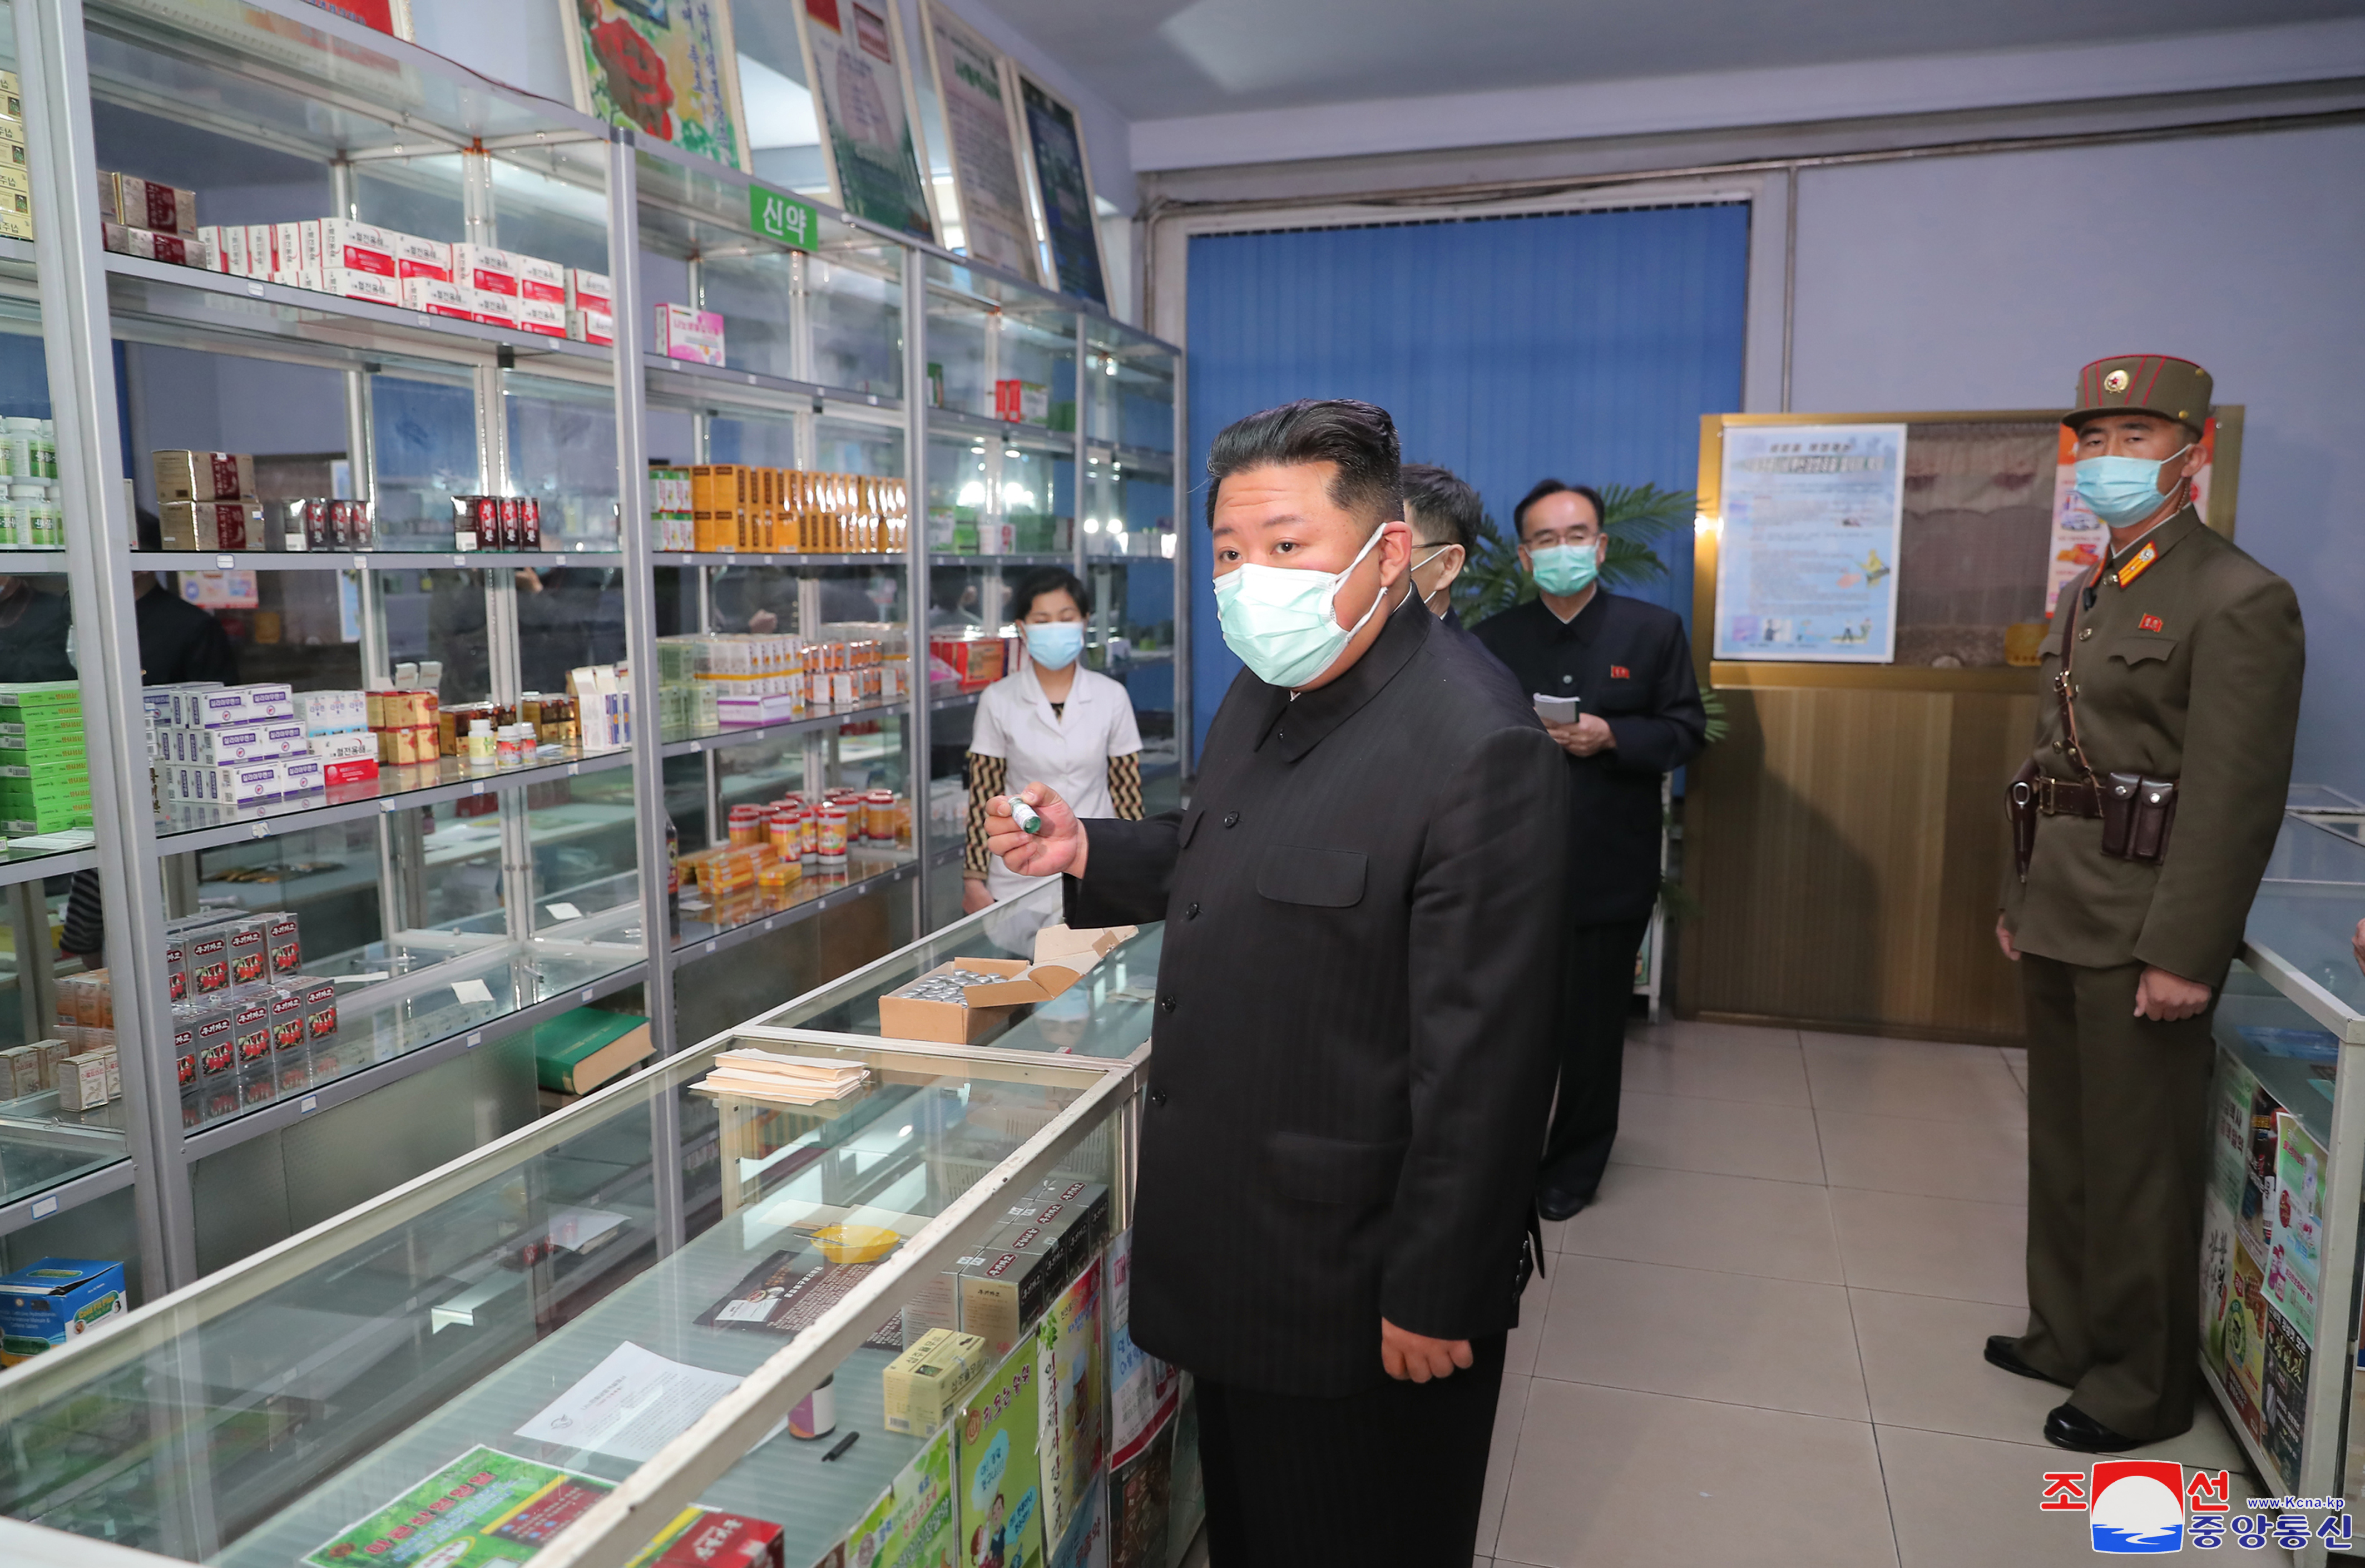 ‘전염병 관리지원체계 완성’ 선언한 북한…다음 수순은?